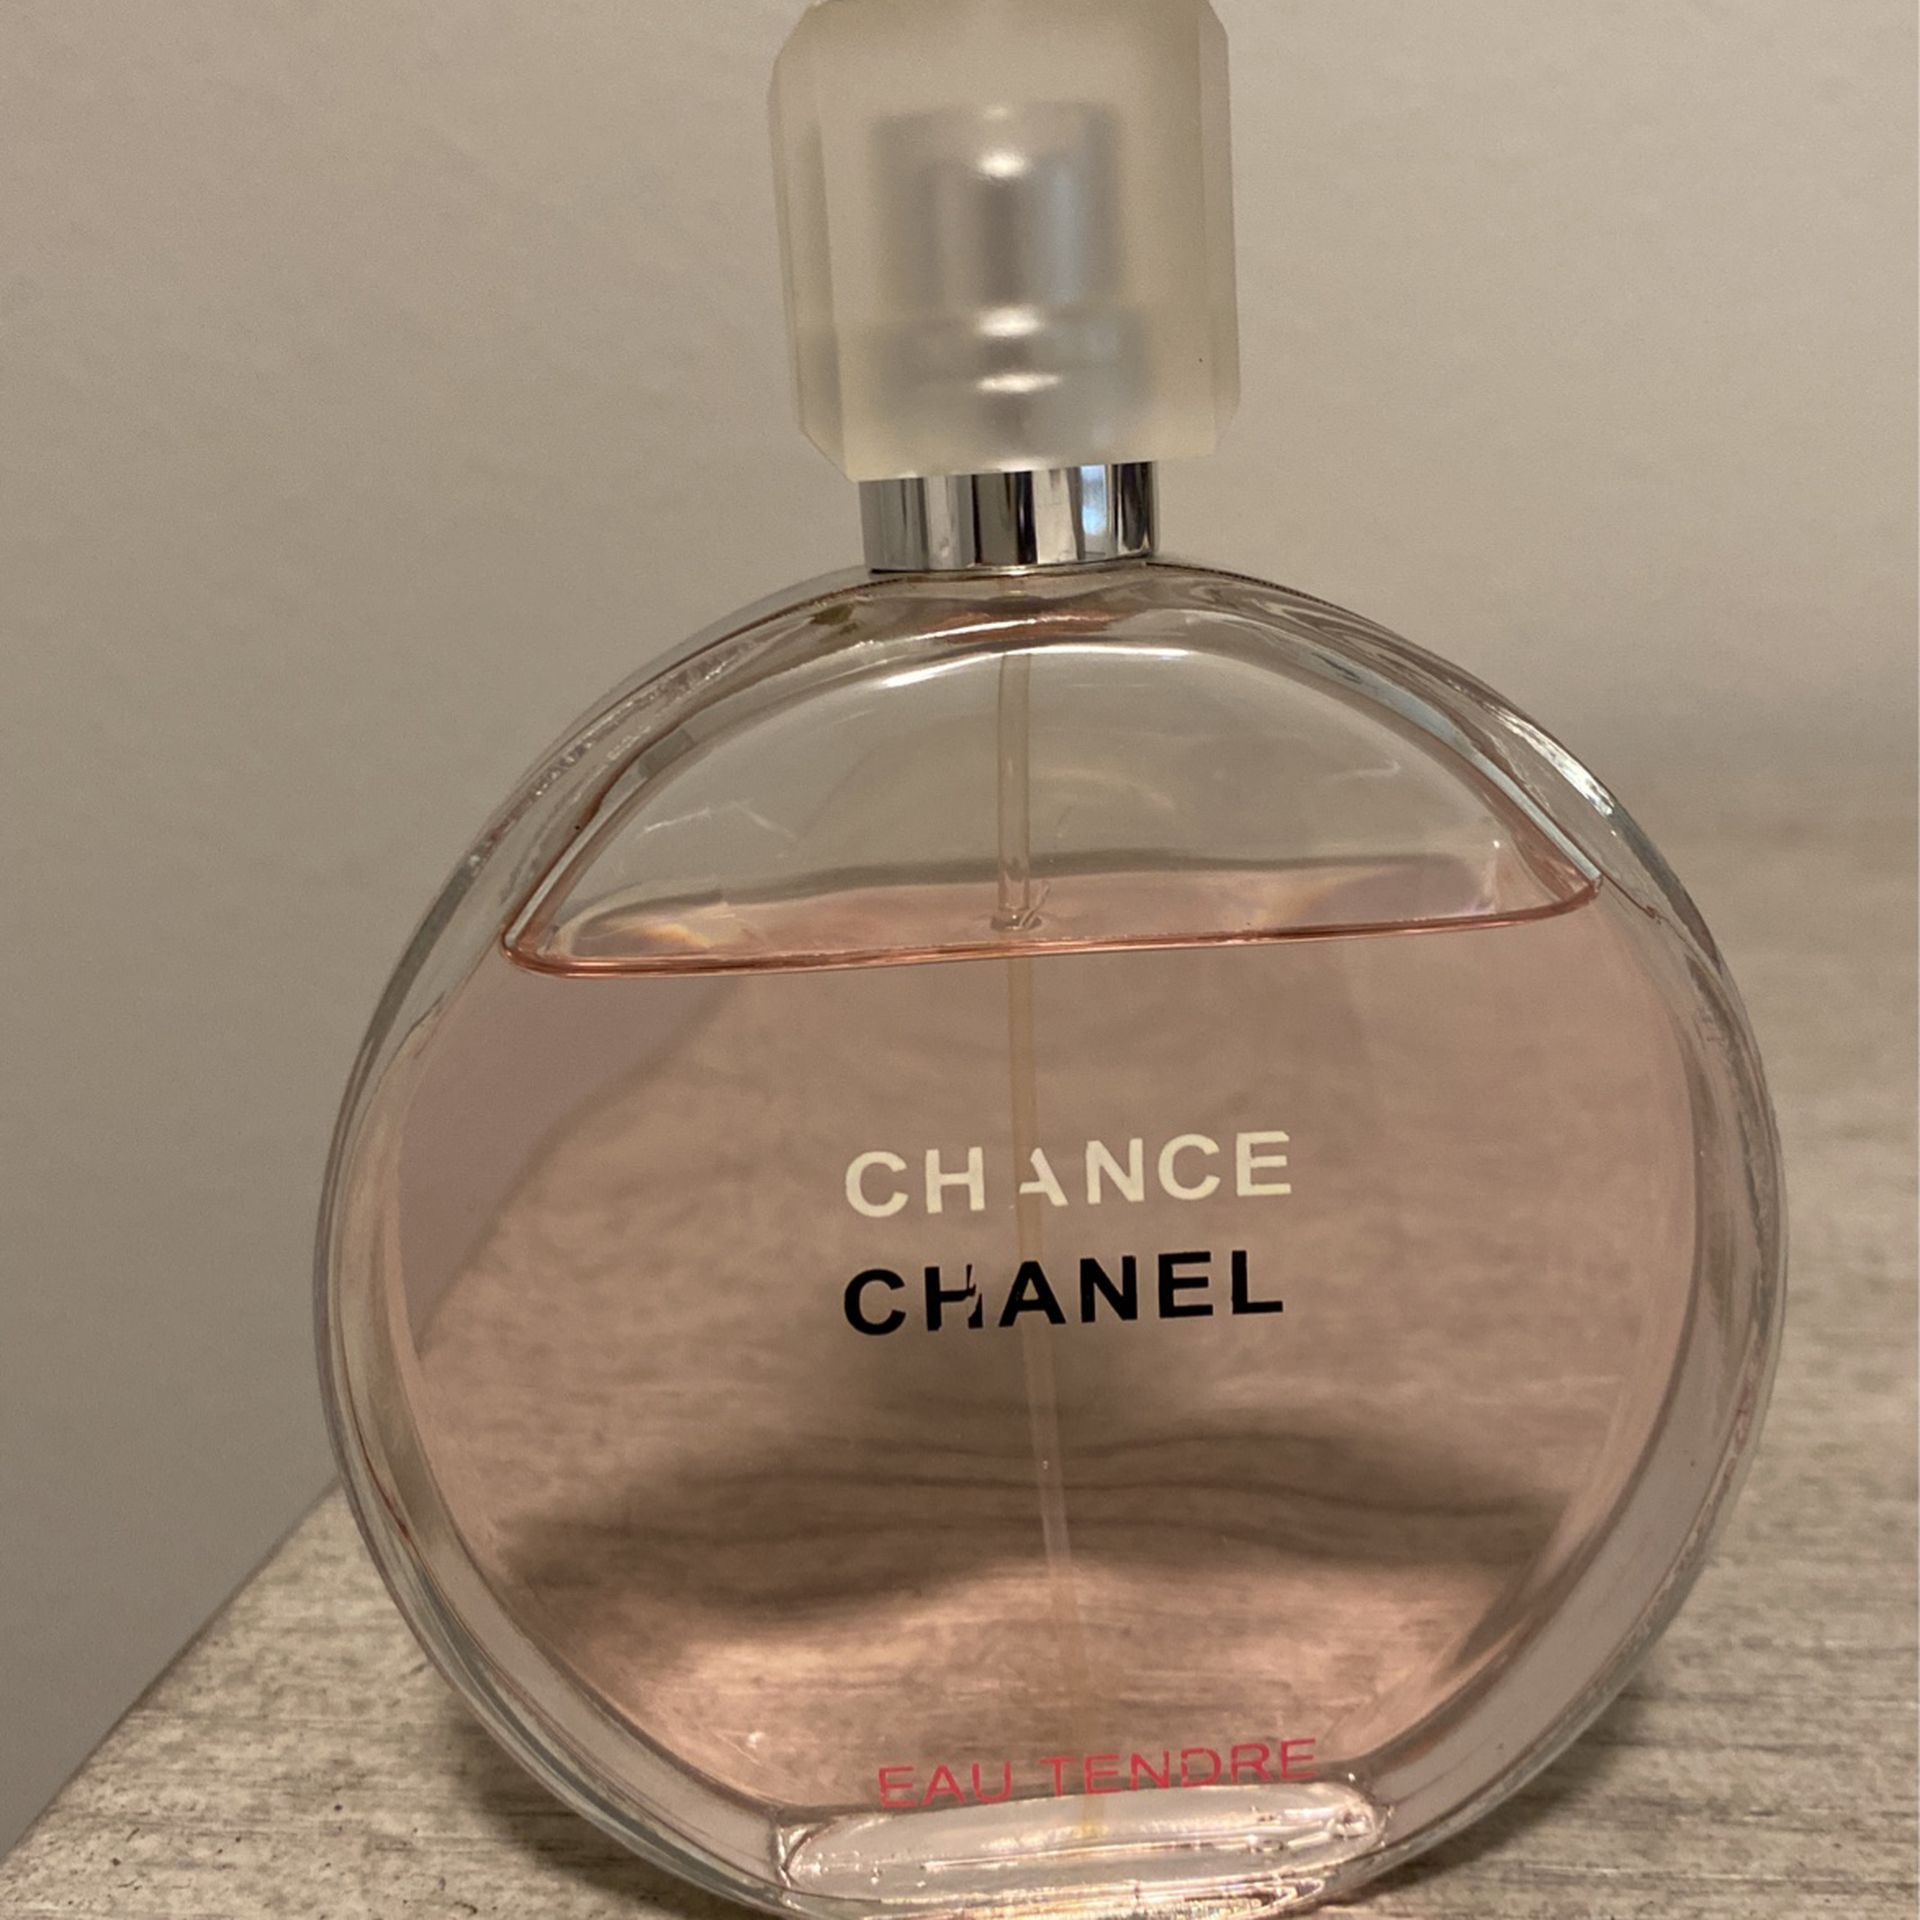 Chanel Chance Eau Tendre Eau de Toilette Twist and Spray Set